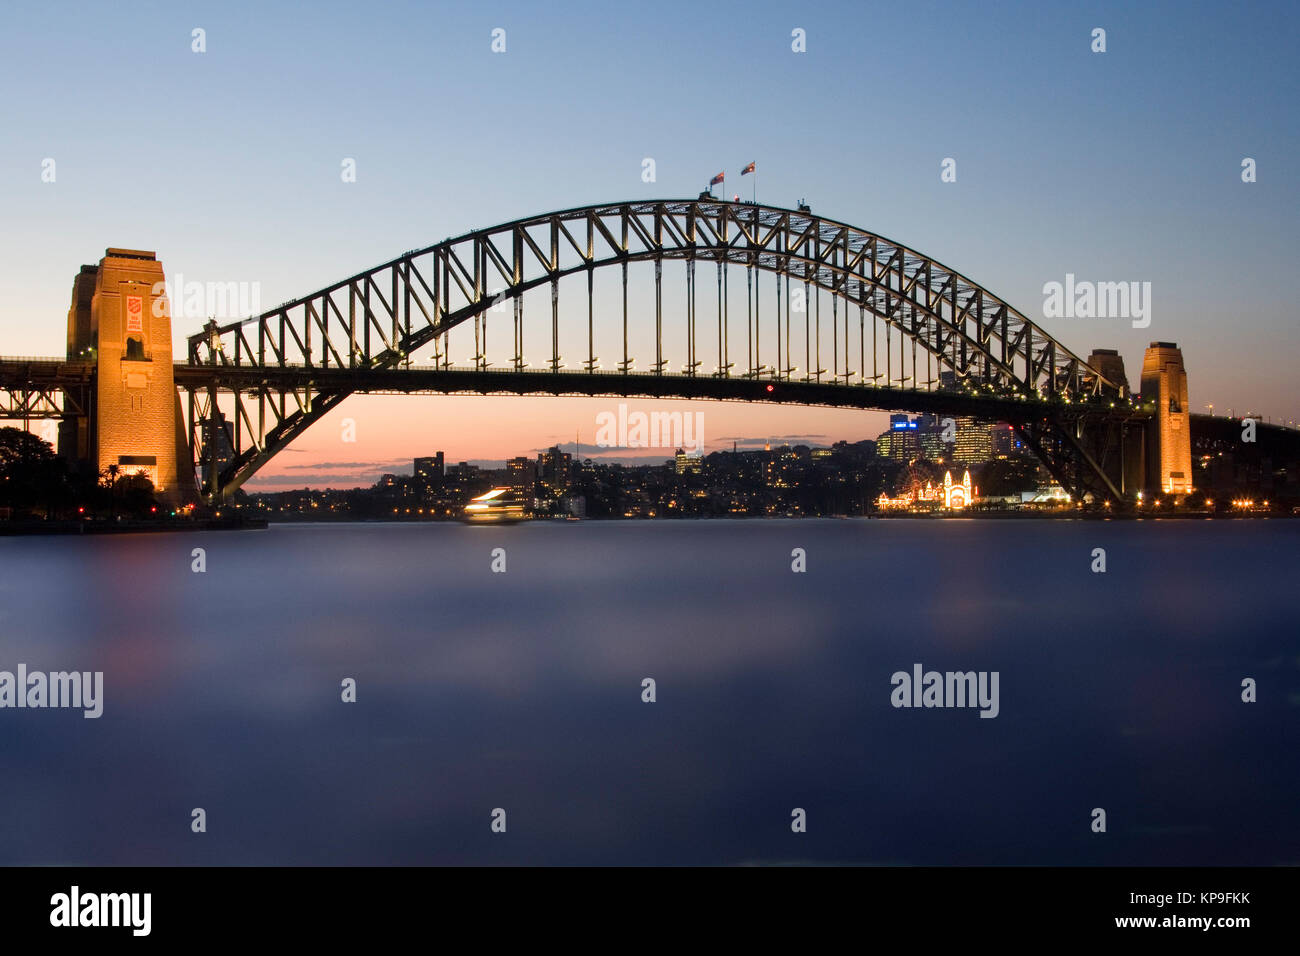 Sydney Harbour Bridge im Hafen von Sydney, New South Wales, Australien. 1932 eröffnet, es trägt Schienenverkehr, Straßenverkehr, Fahrrad- und Fußgängerverkehr zw. Stockfoto